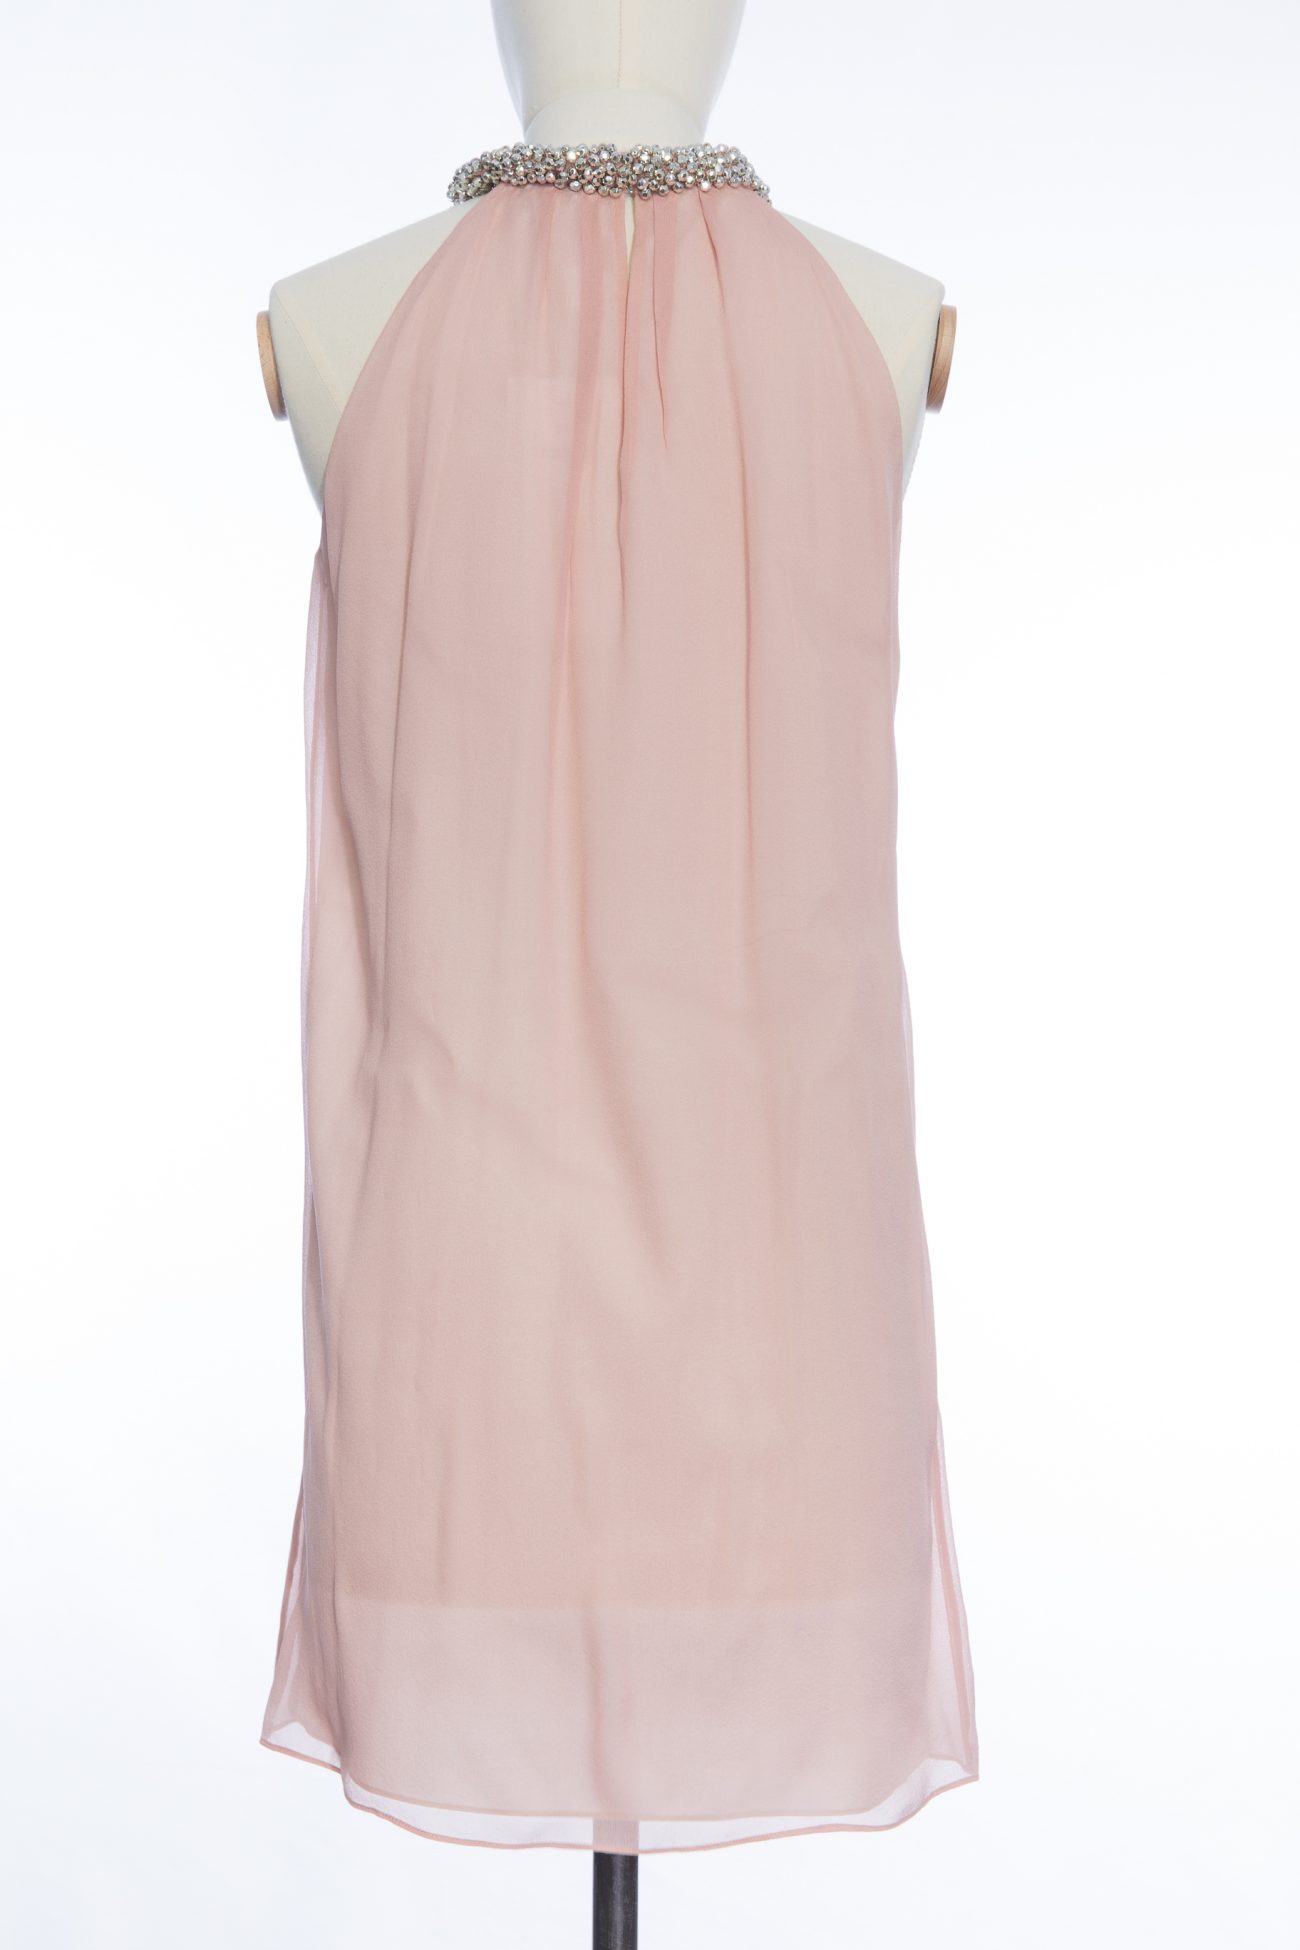 Diane Von Furstenberg tunic dress, 0